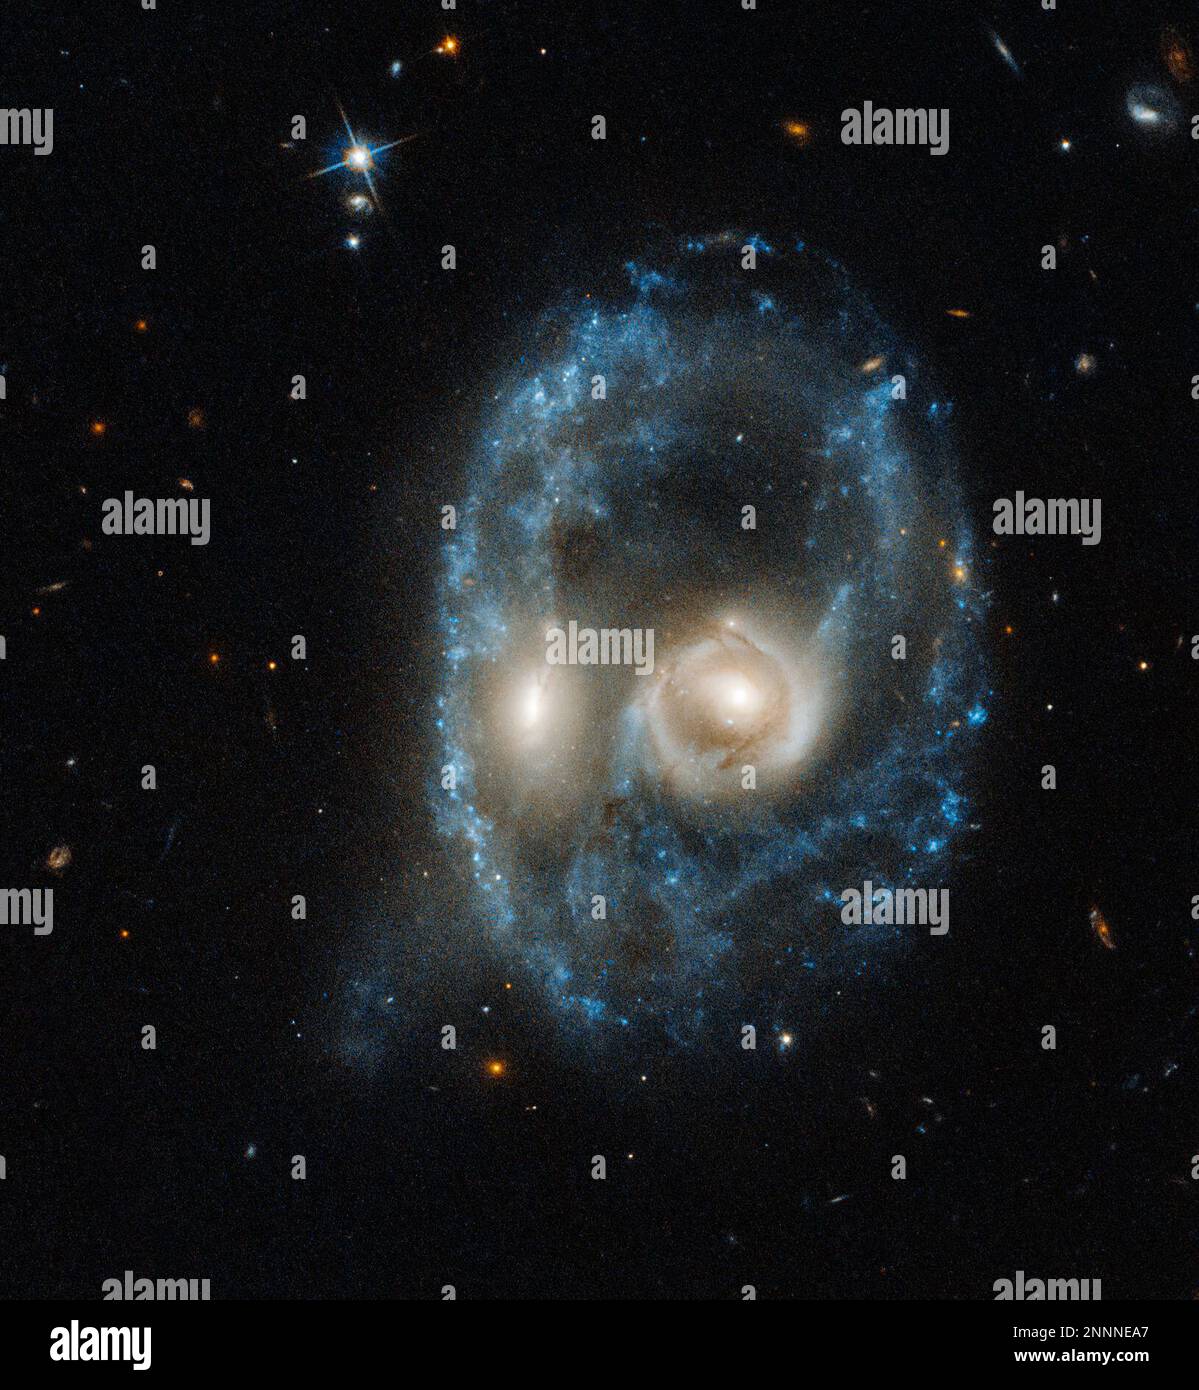 Leerzeichen. 28. Okt. 2019. Wenn Astronomen tief in den Weltraum blicken, erwarten sie nicht, etwas zu finden, das sie anstarrt. In diesem neuen Hubble-Weltraumteleskop-Bild starrt ein verblüffendes Paar glühender Augen bedrohlich in unsere Richtung. Die durchdringenden „Augen“ sind das auffälligste Merkmal dessen, was dem Gesicht einer außerirdischen Kreatur ähnelt. Aber das ist keine gespenstische Erscheinung. Hubble sieht eine titanische Frontalkollision zwischen zwei Galaxien. Jedes Auge ist der helle Kern einer Galaxie, von der eins in das andere geschleudert wurde. Der Umriss des Gesichts ist ein Ring junger blauer Sterne. Andere Klumpen neuer St. Stockfoto